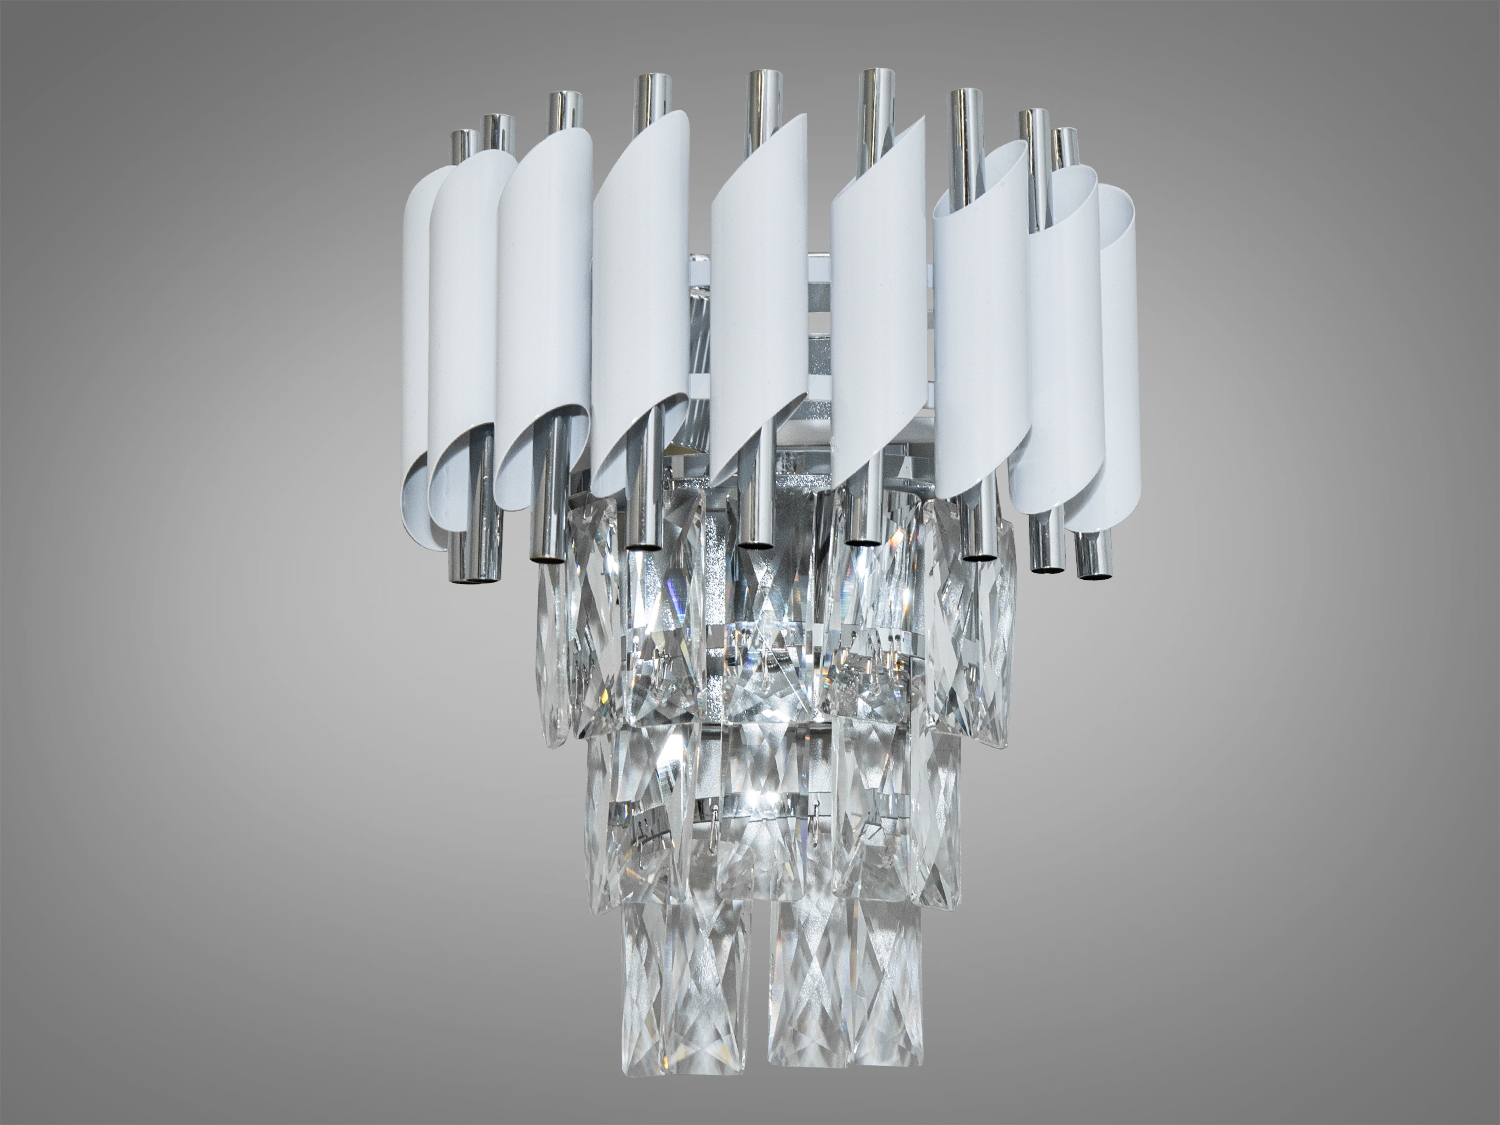 Сучасний кришталевий настінний світильник в коридор, 2 лампи. Світильник пропонується за доступною ціною, що робить його вигідним для багатьох, пропонуючи неперевершену якість та стиль.